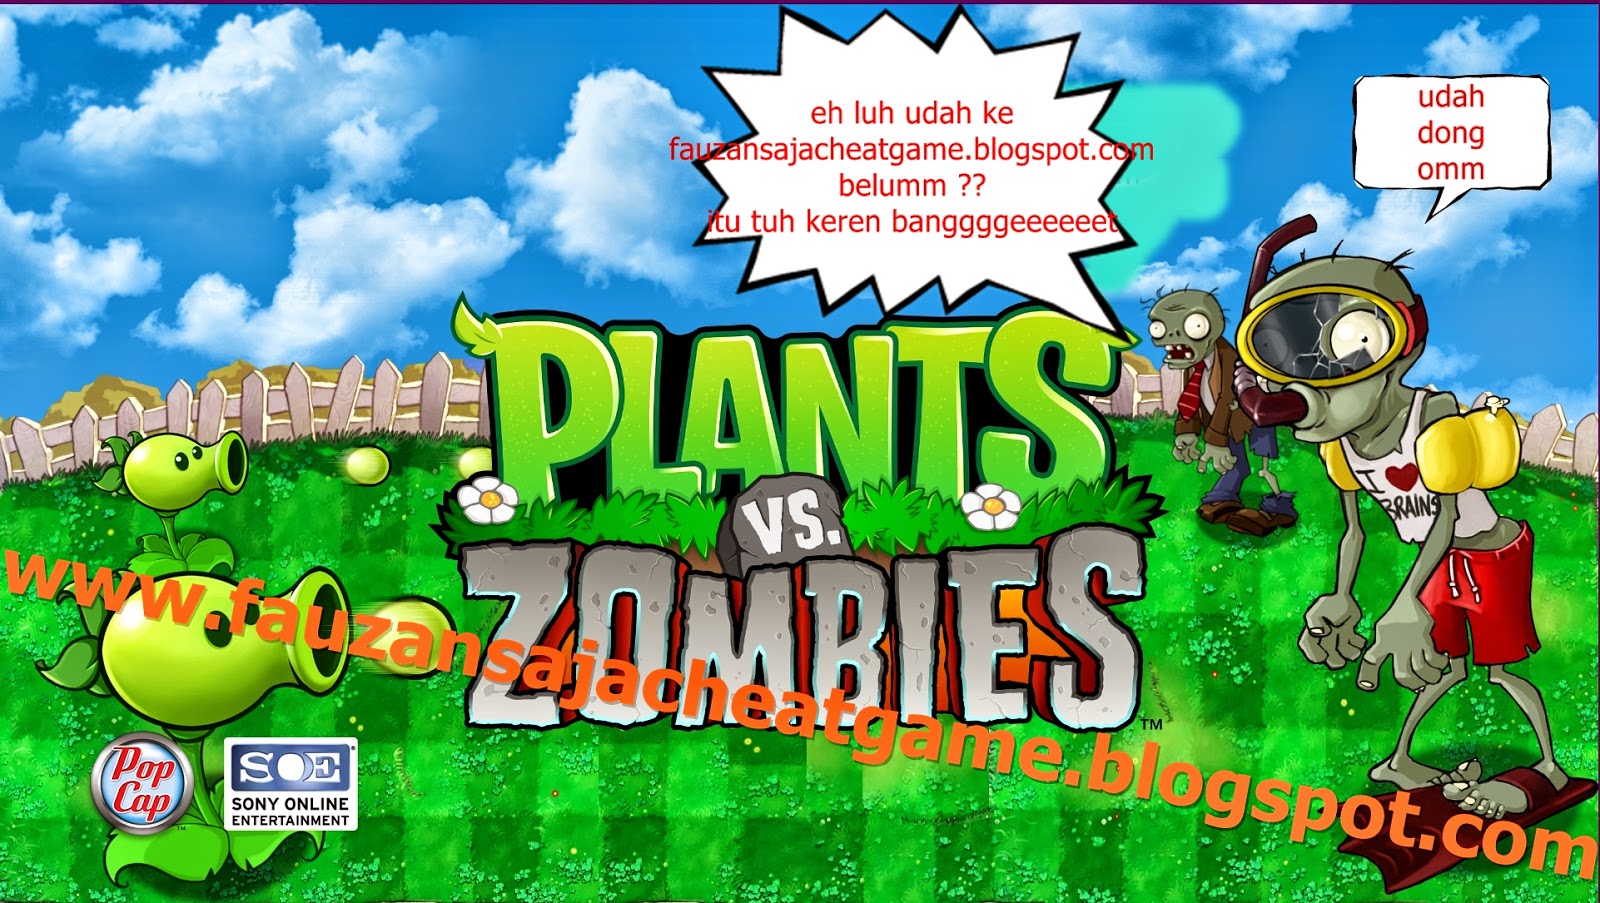 Cara menambahkan sun pada game pc plants vs zombie pakai cheat engine -  Fauzan Ashari Blog